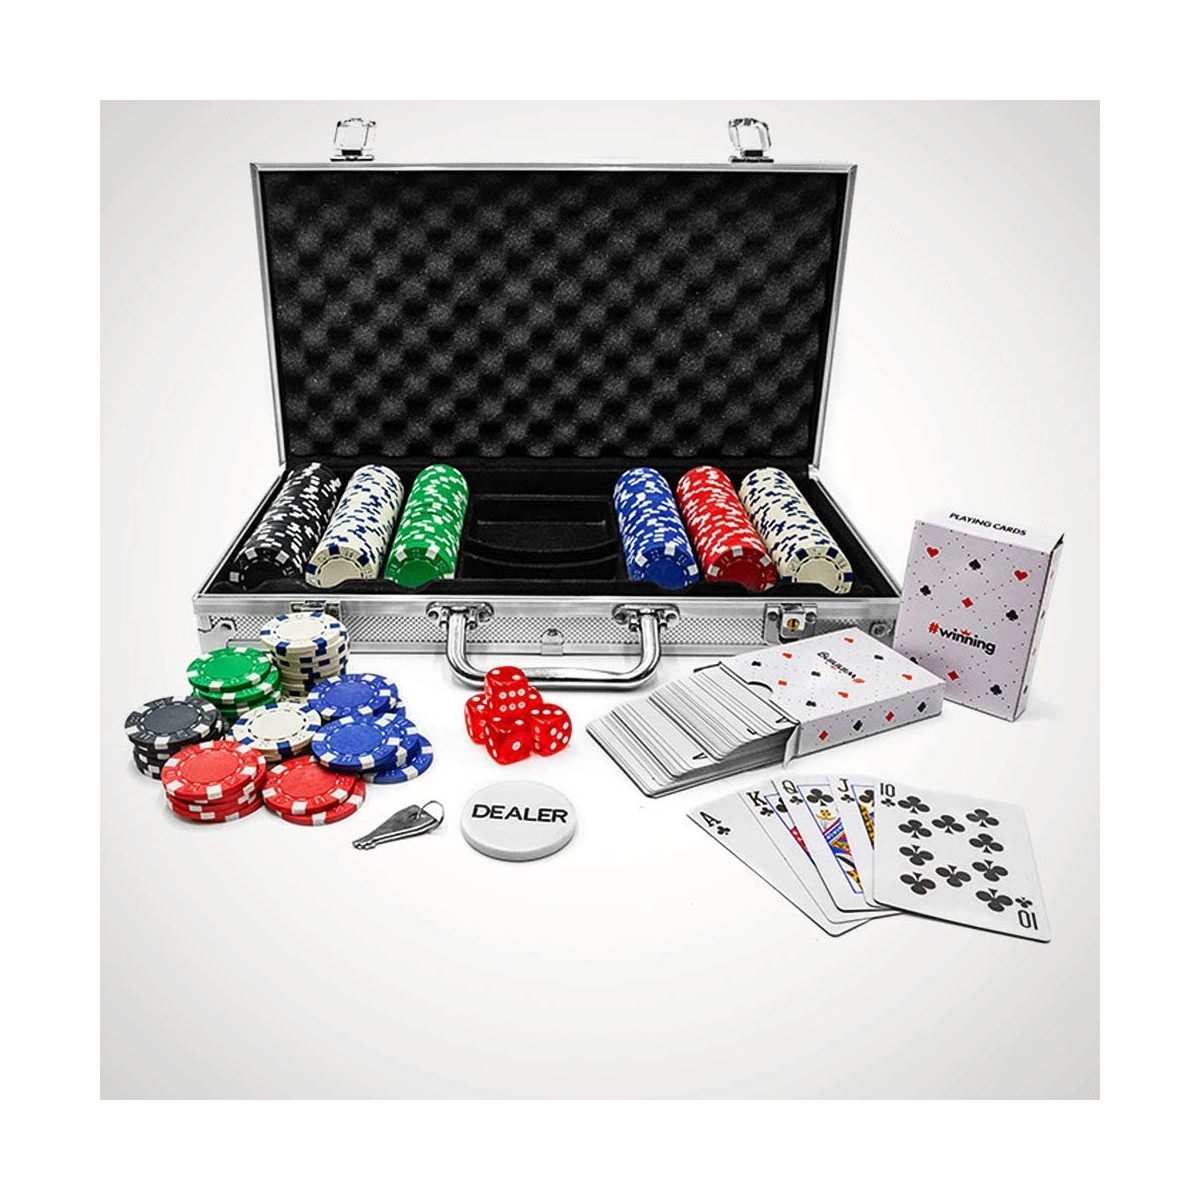 Relaxdays Valigetta Poker 10031551 2 Mazzi di Carte Colore 5 Dadi Dealer 300 Chips Laser Richiudibile & Portatile,Alluminio,Argento 